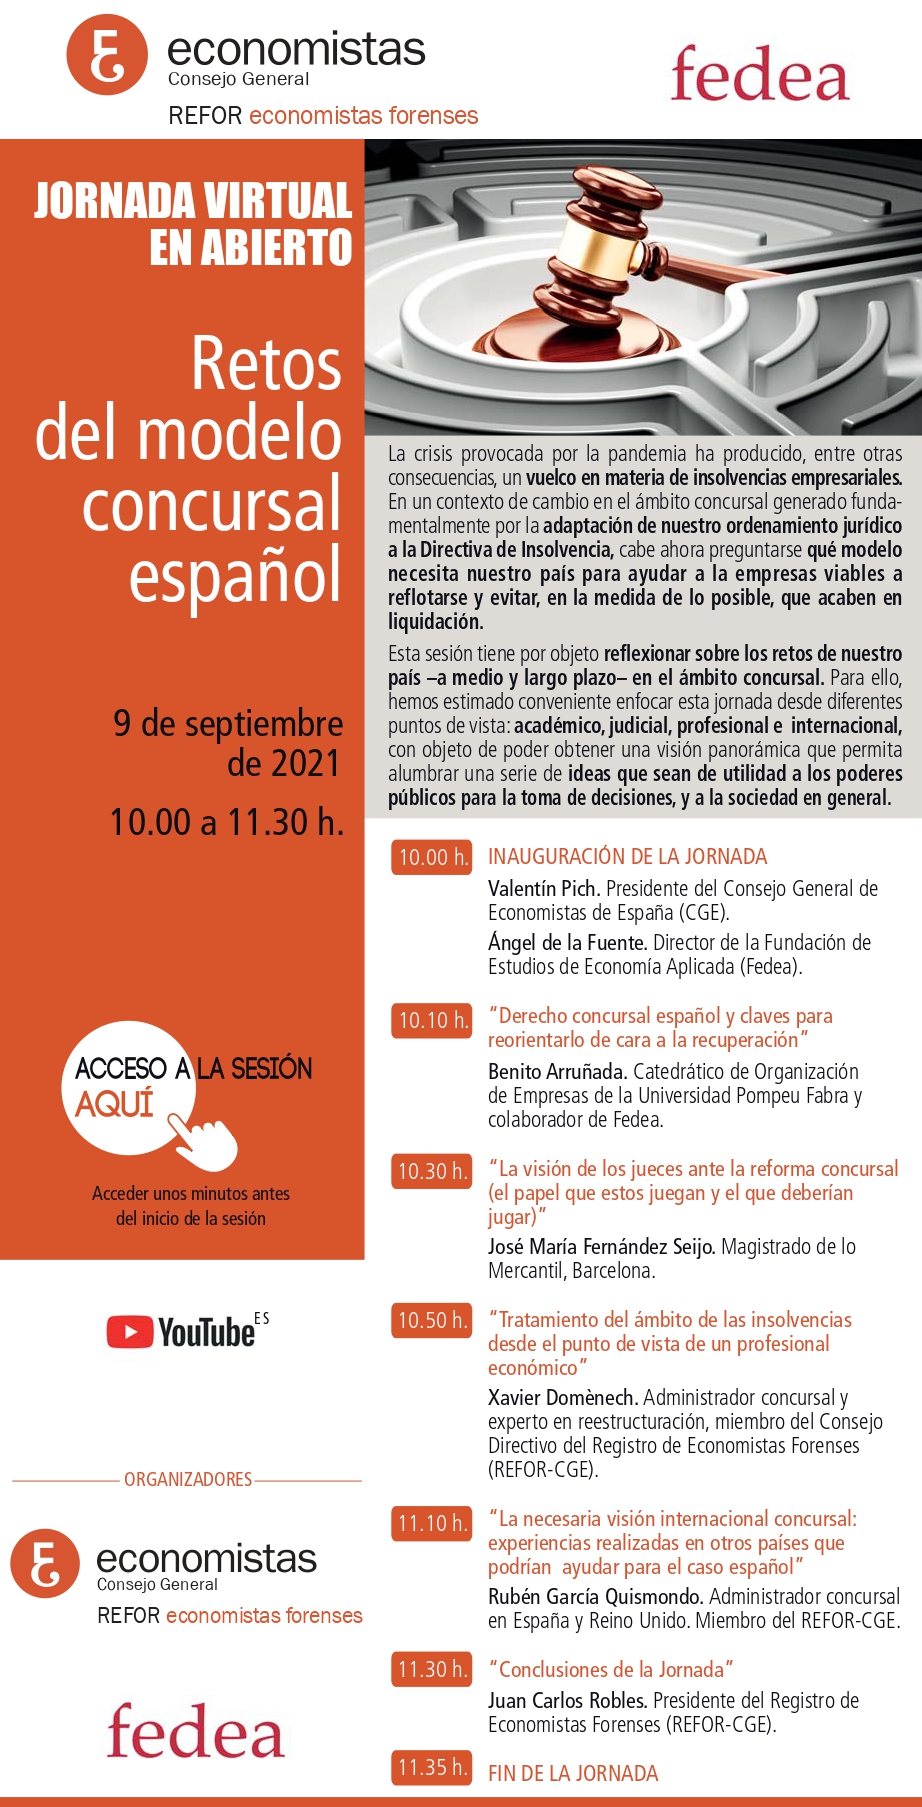 Invitación CGE-FEDEA.Jornada virtual en abierto_09.09.21 (10.00 h.)_Retos del modelo concursal español_page-0001